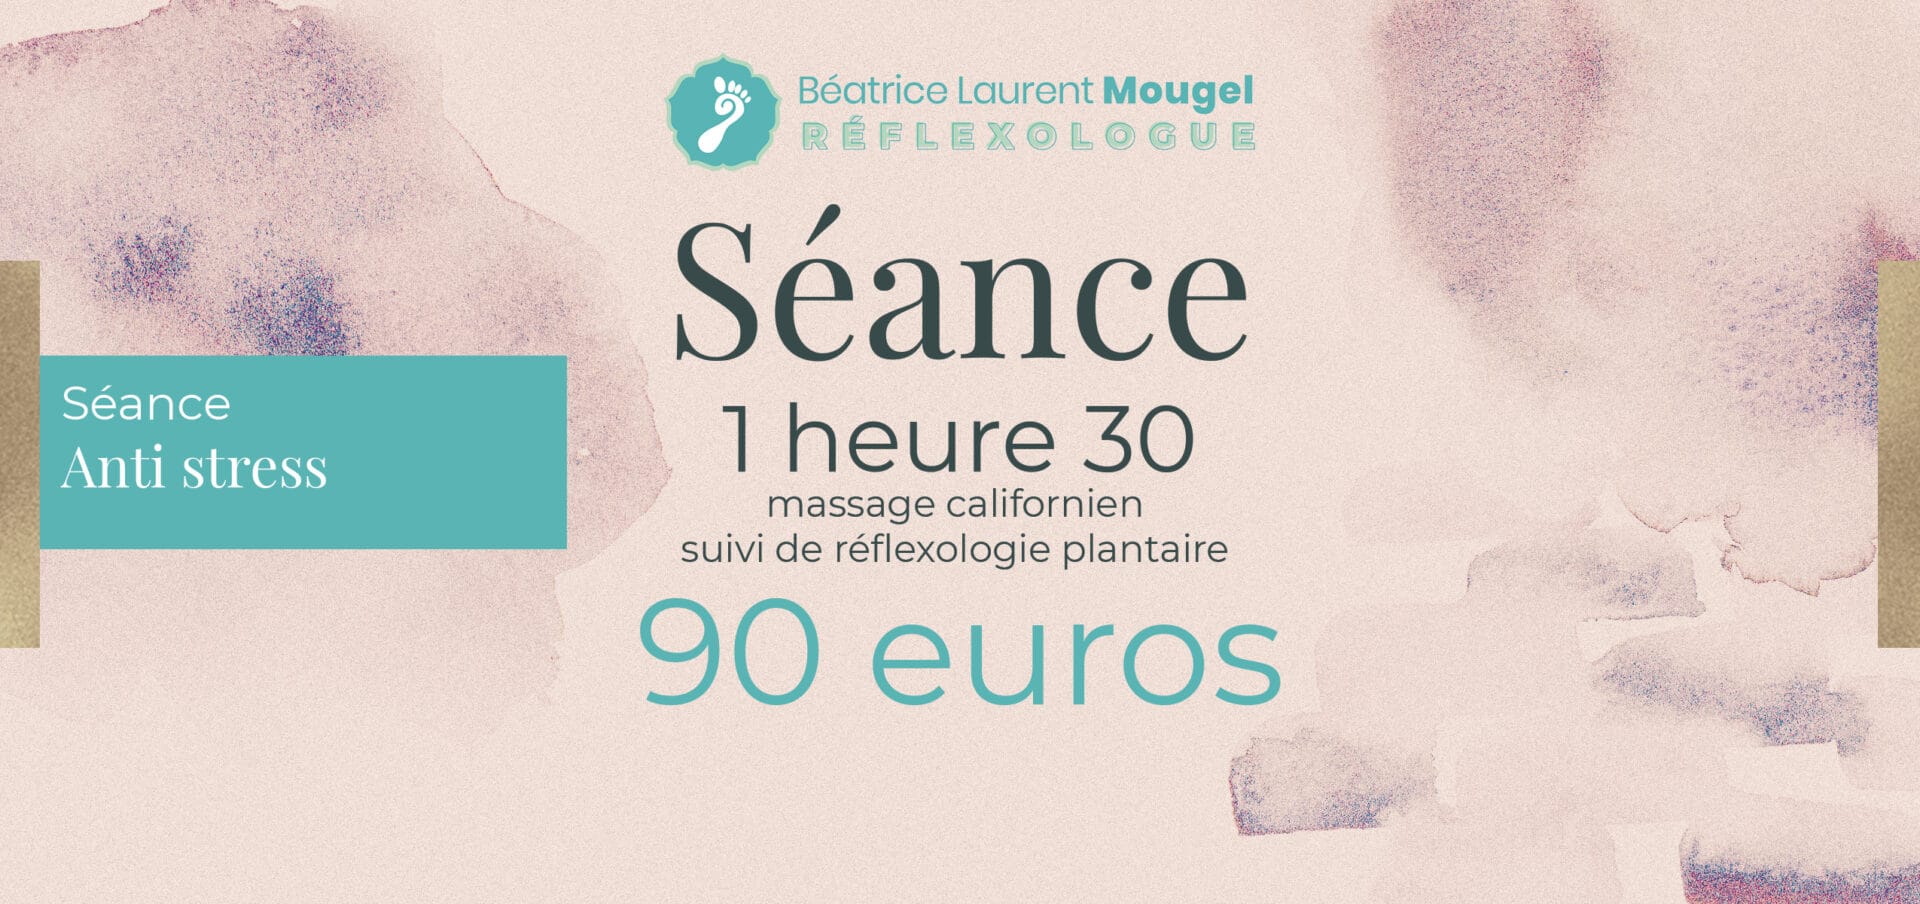 Séance anti stress à Paris 15ème arrondissement (massage californien suivi réflexologie plantaire ) - Durée 1h30 au prix de 90 euros